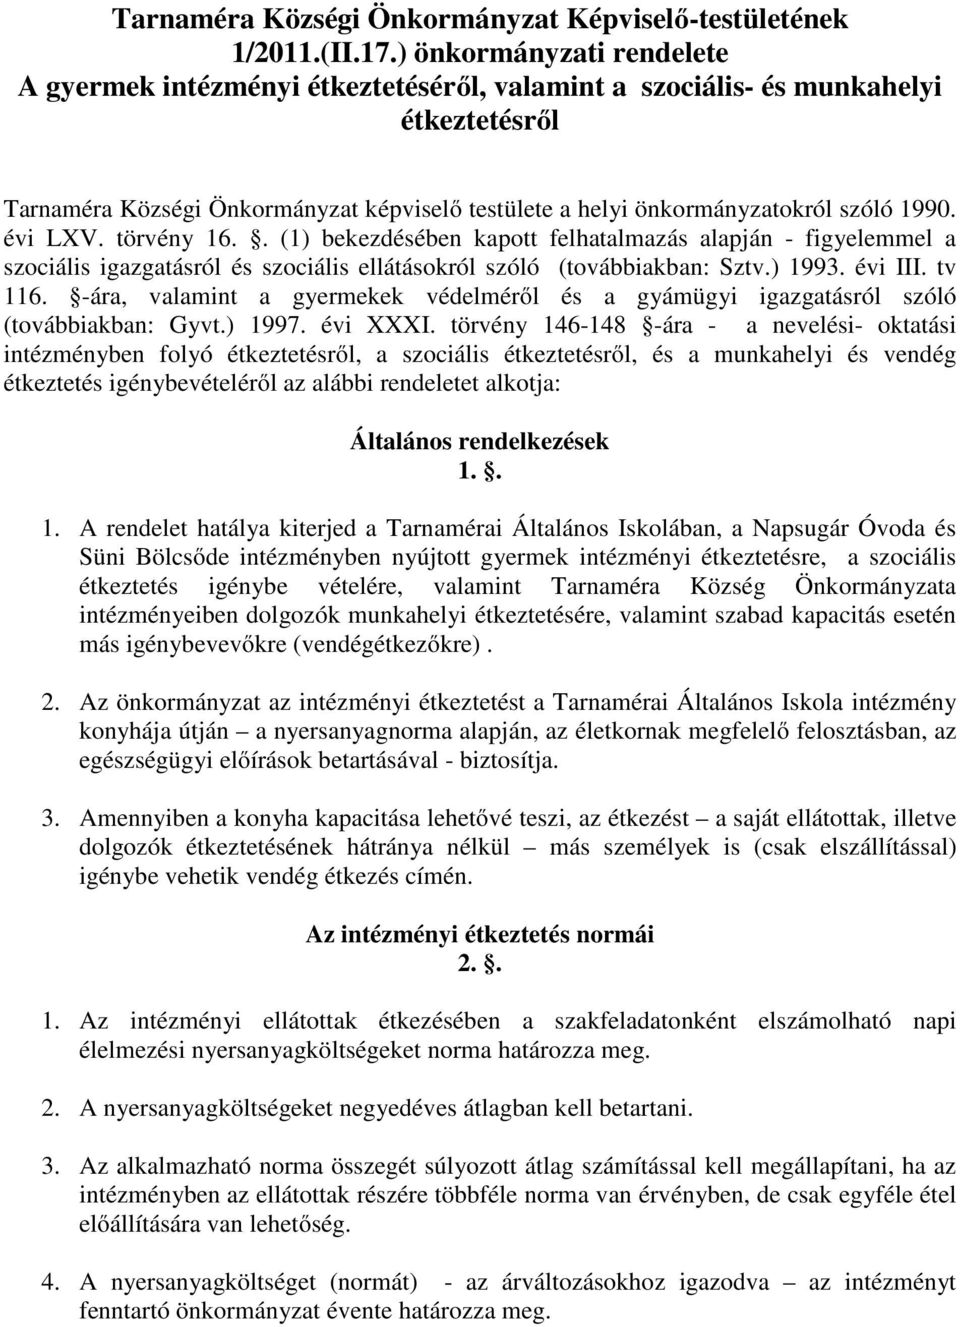 1990. évi LXV. törvény 16.. (1) bekezdésében kapott felhatalmazás alapján - figyelemmel a szociális igazgatásról és szociális ellátásokról szóló (továbbiakban: Sztv.) 1993. évi III. tv 116.